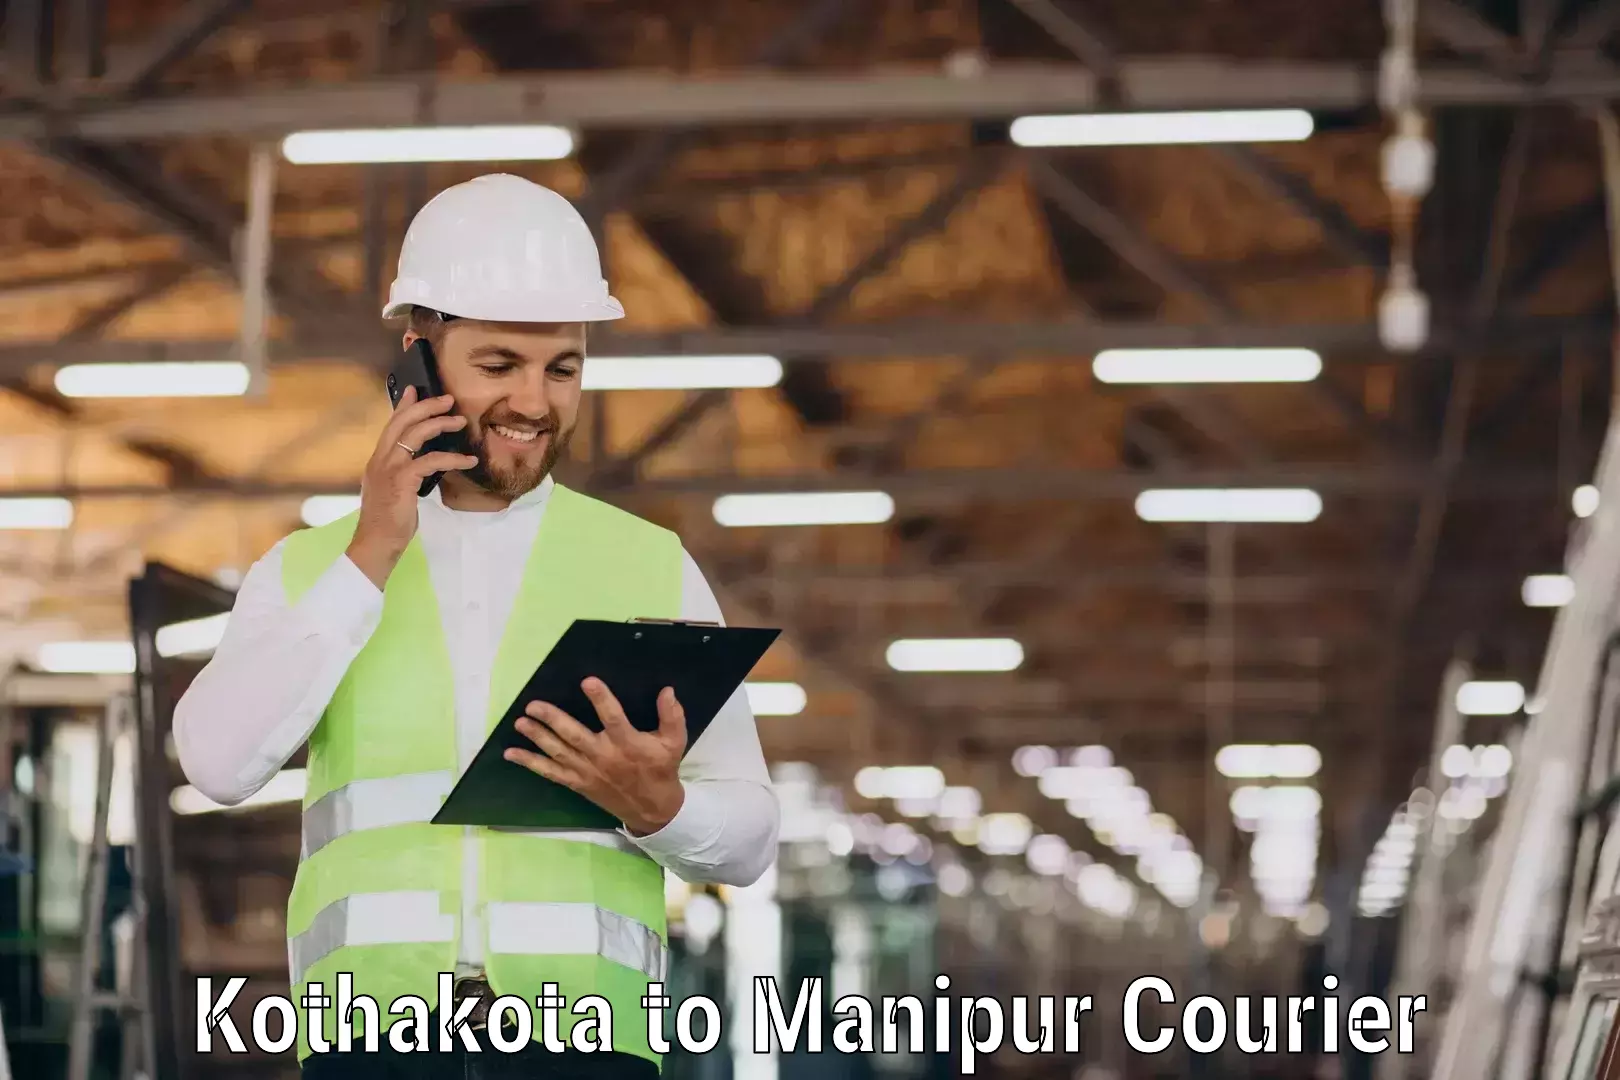 Premium courier solutions Kothakota to Moirang